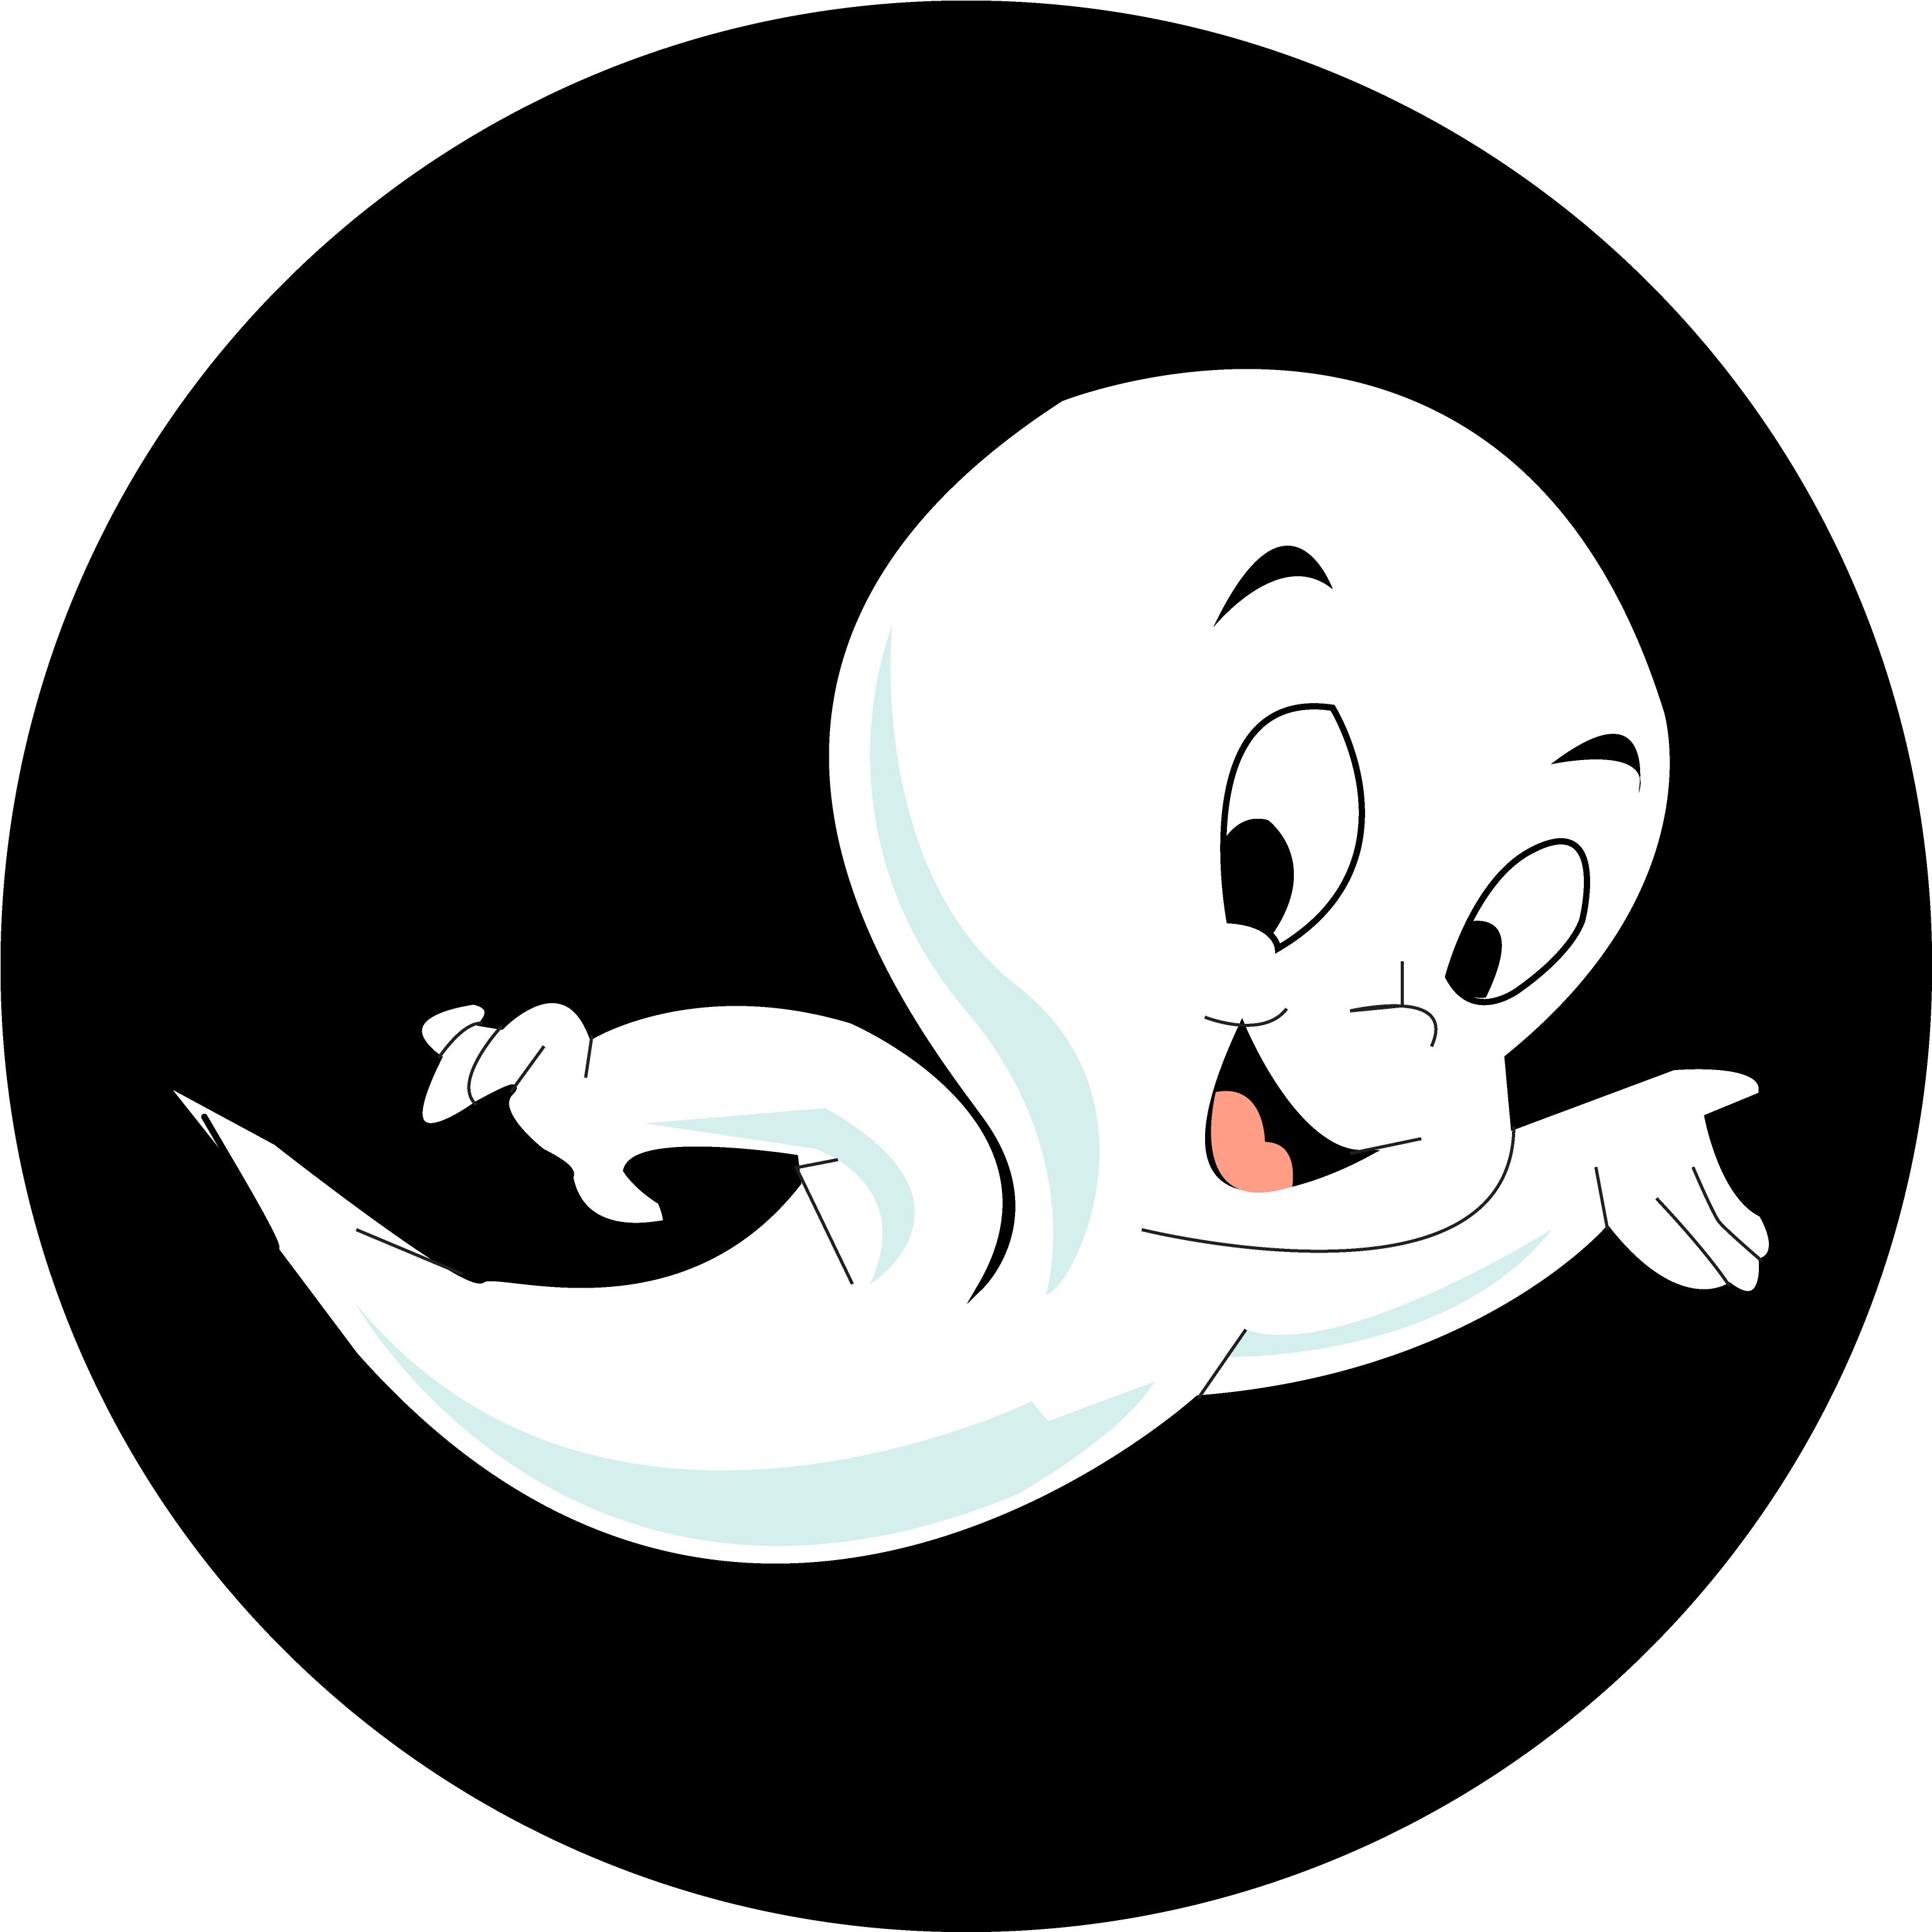 Casper The Friendly Ghost By Mollyketty-d4jma99 - Casper The Friendly Ghost Png (3600x3600), Png Download